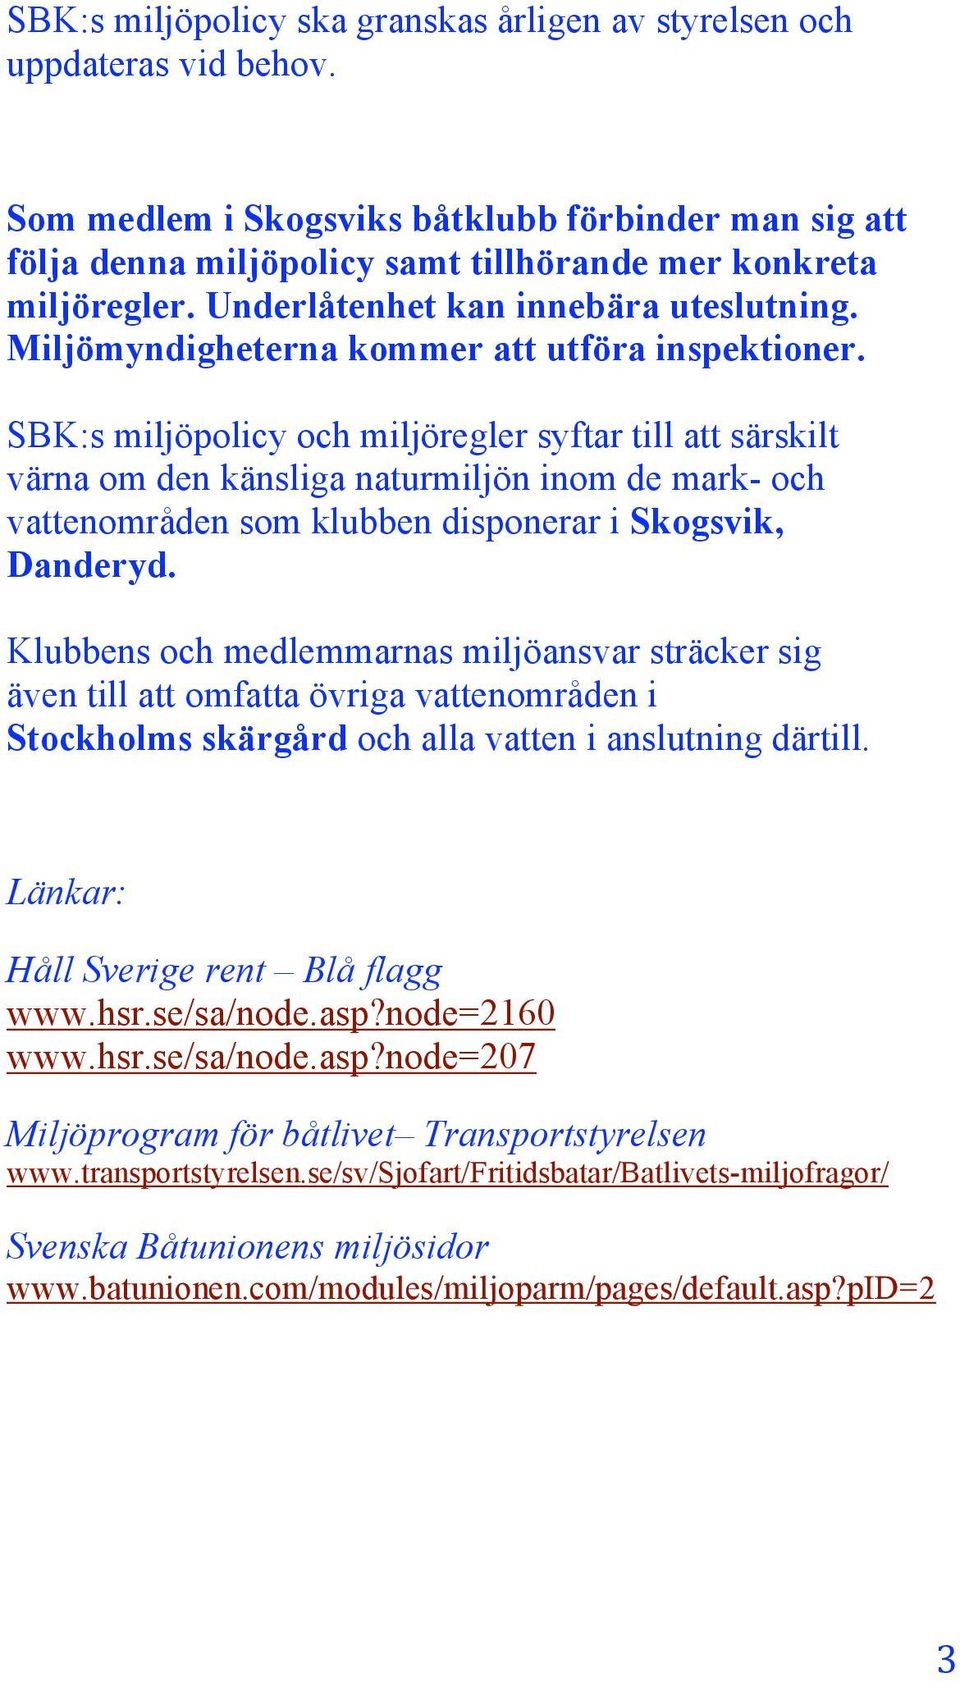 SBK:s miljöpolicy och miljöregler syftar till att särskilt värna om den känsliga naturmiljön inom de mark- och vattenområden som klubben disponerar i Skogsvik, Danderyd.